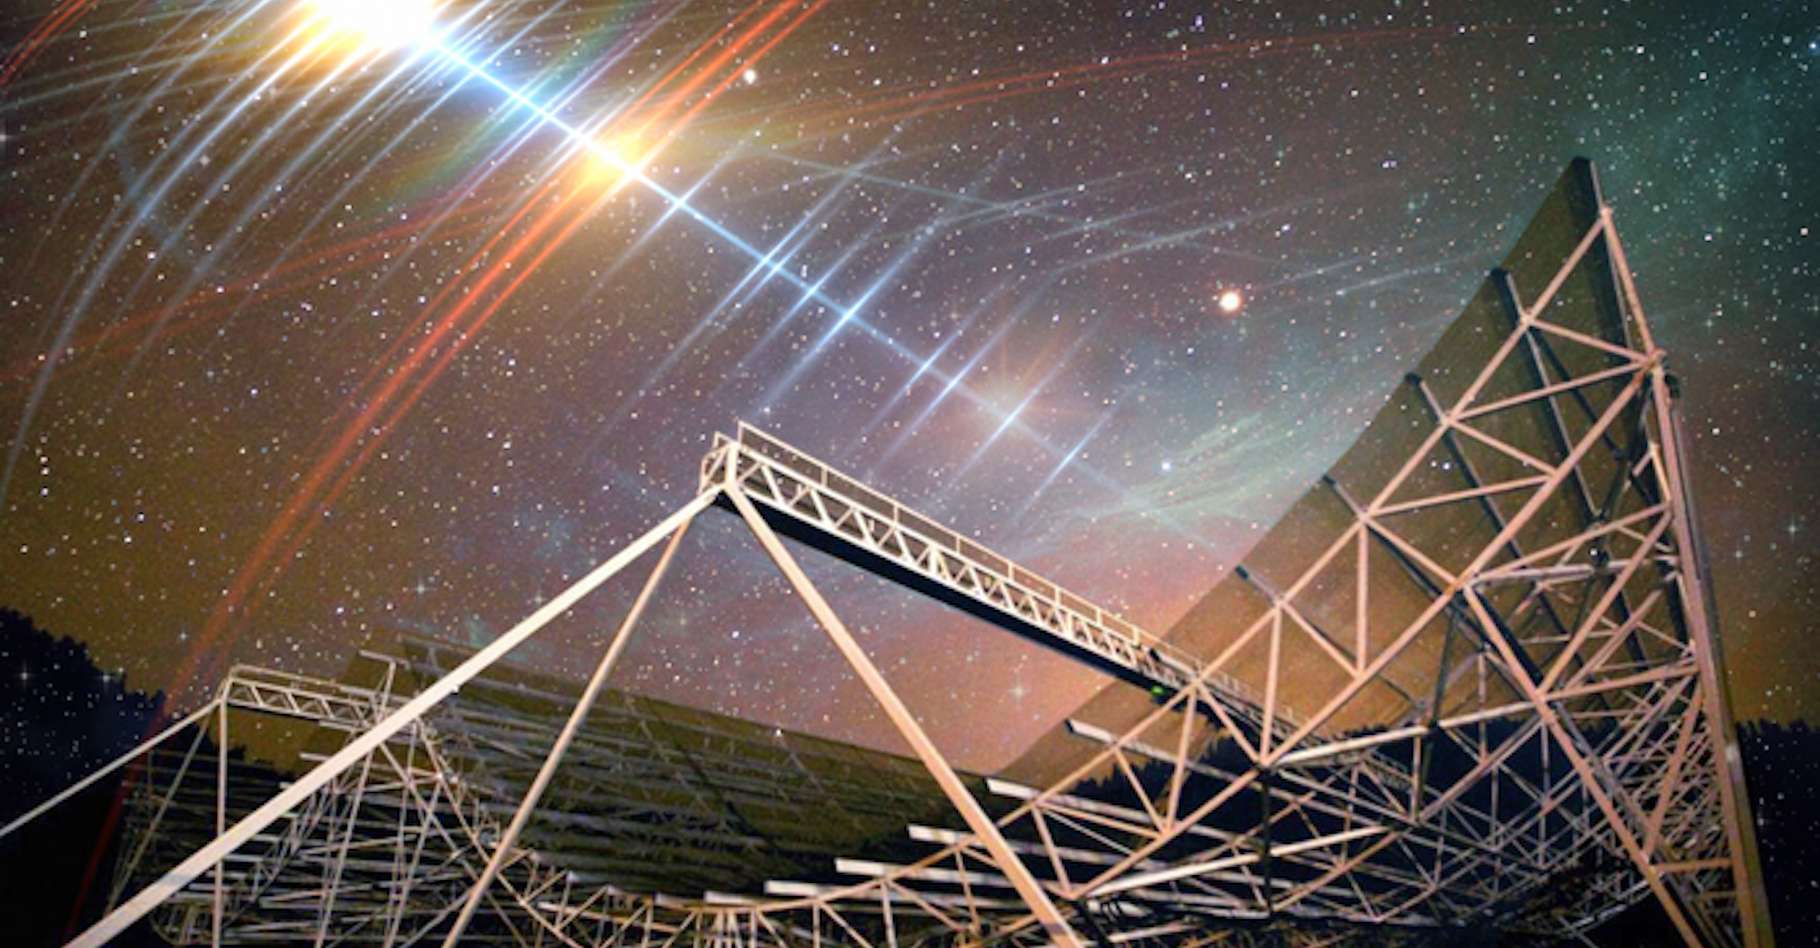 Ces 25 sursauts radio rapides qui se répètent intriguent les astronomes - Futura